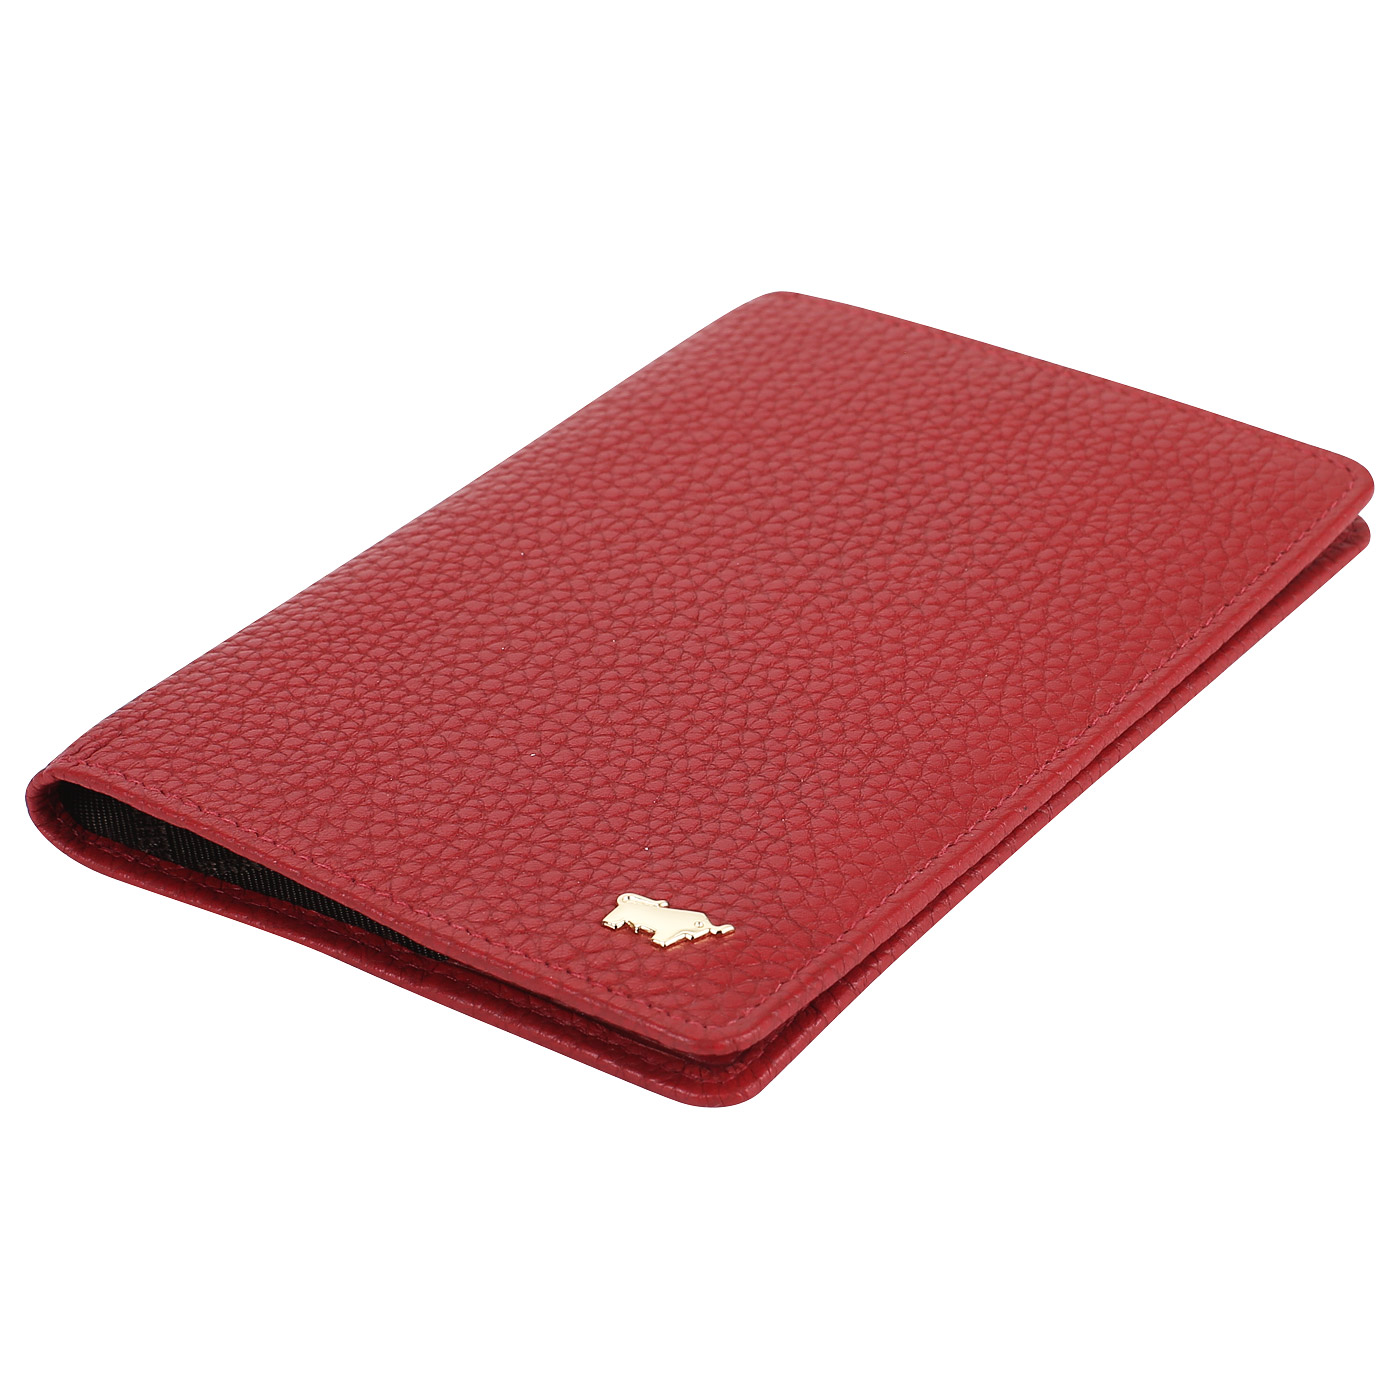 Красная обложка для паспорта Braun Buffel Asti